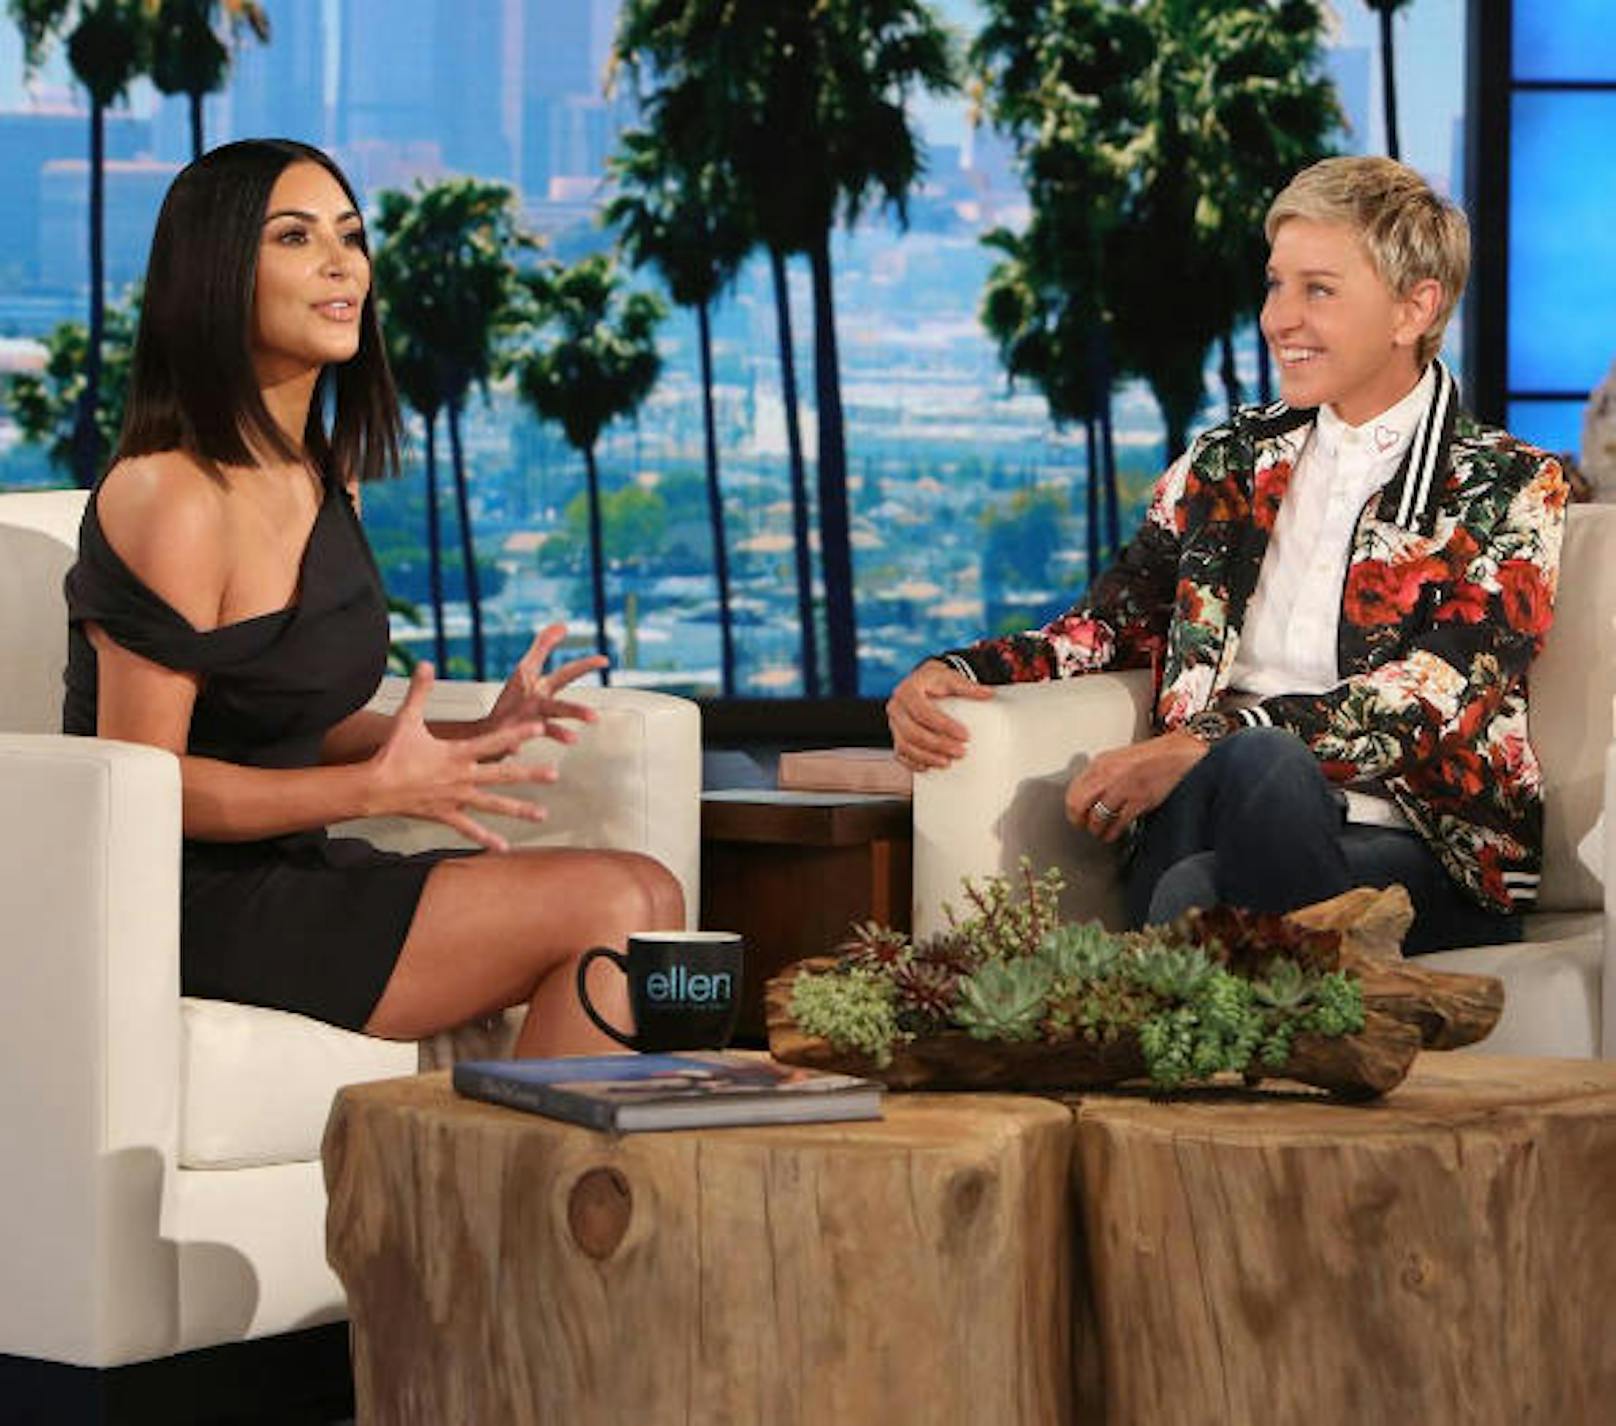 27.04.2017: In der "Ellen DeGeneres"-Show gibt Kim Kardashian ihr erstes TV-Interview seit dem Raubüberfall im Oktober 2016. "Kim ist hier und sie spricht absolut offen über alles", schreibt Talkmasterin Ellen DeGeneres zu diesem Foto.